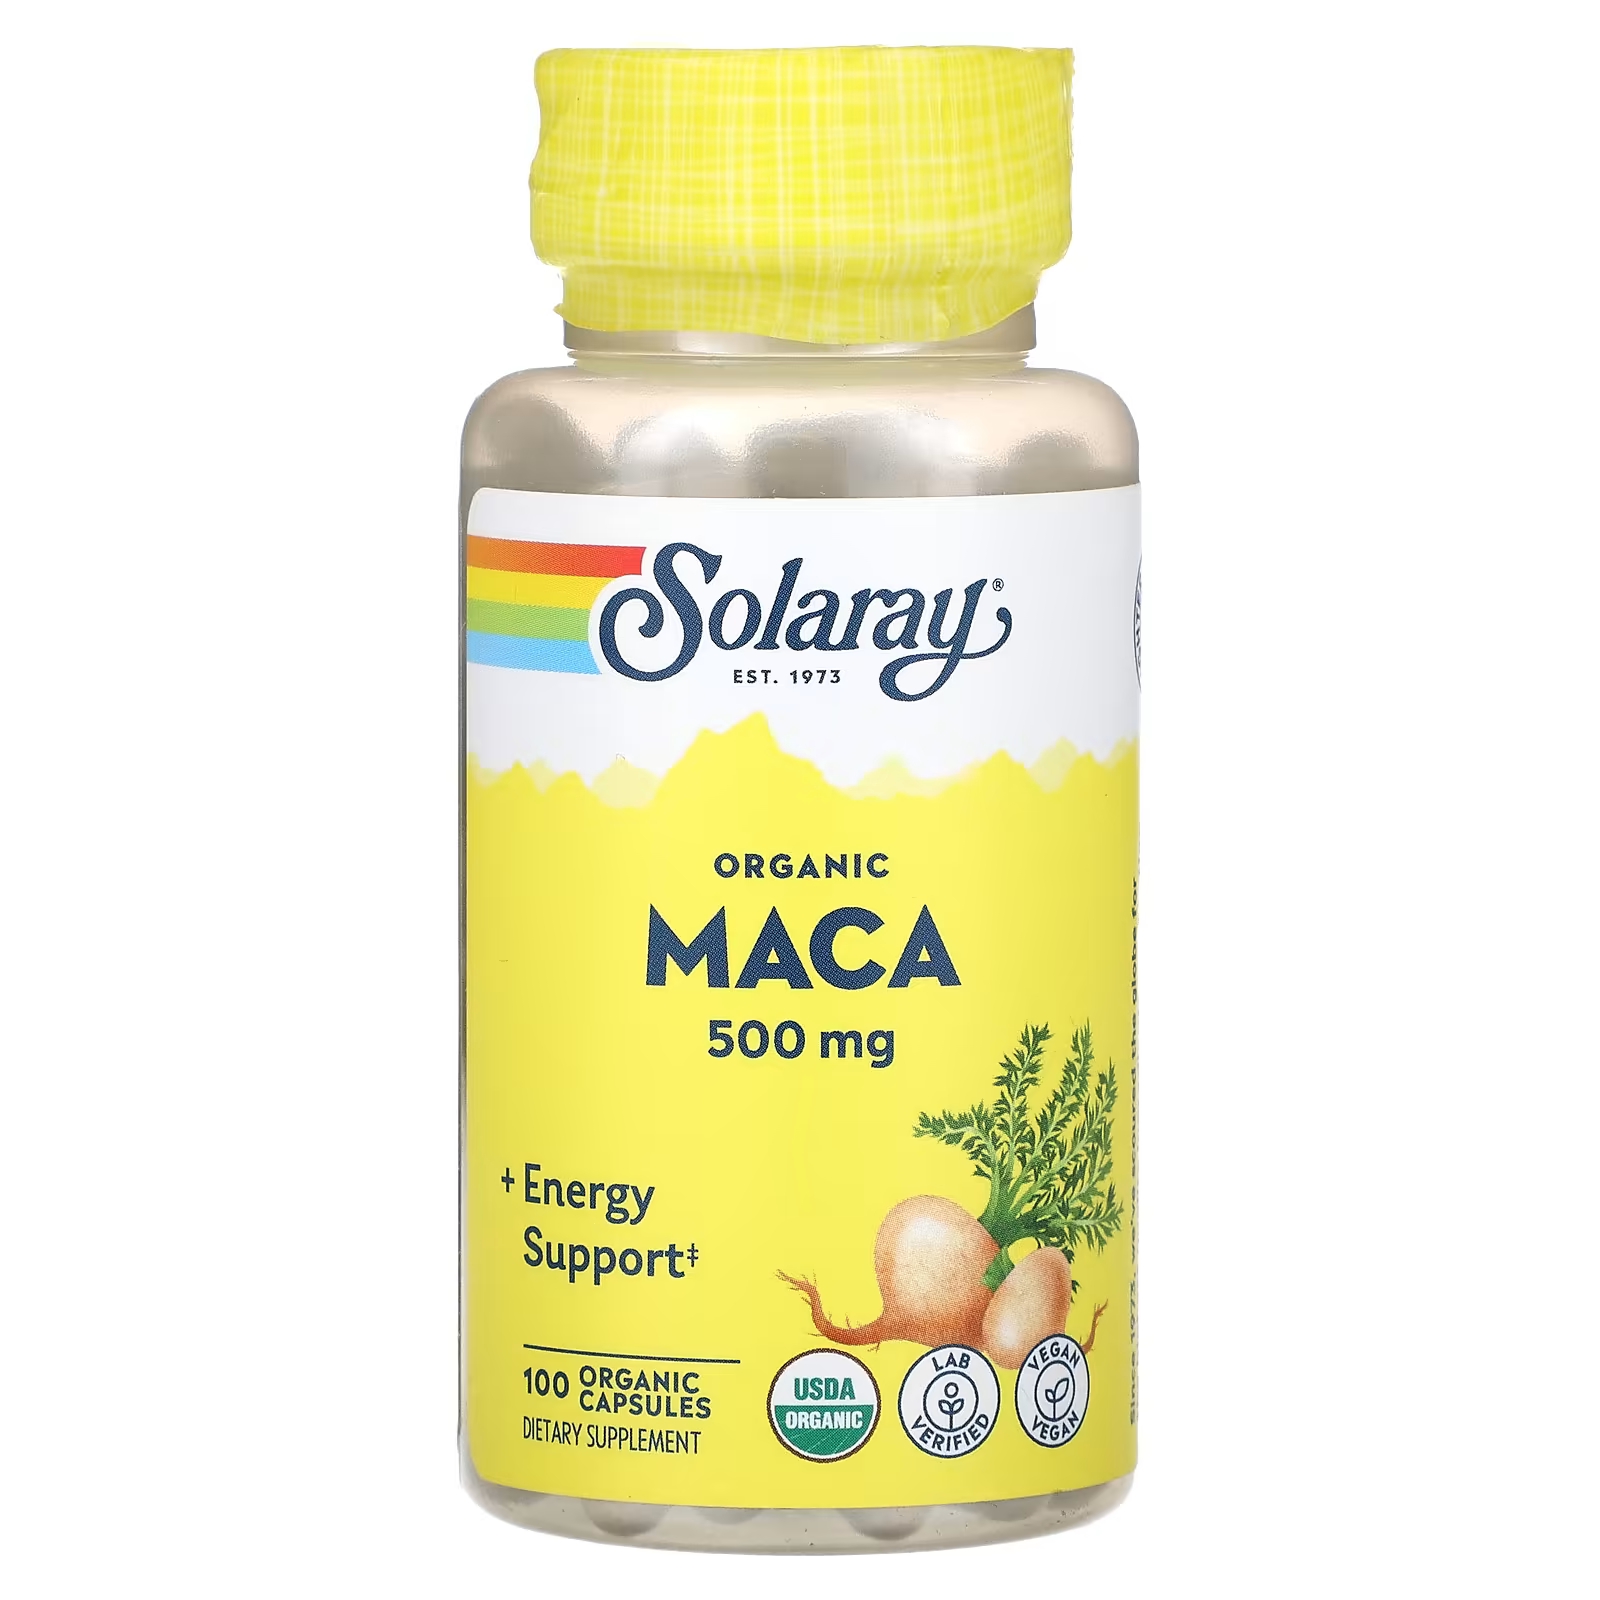 Пищевая добавка Solaray Organic Maca 500 мг, 100 органических капсул